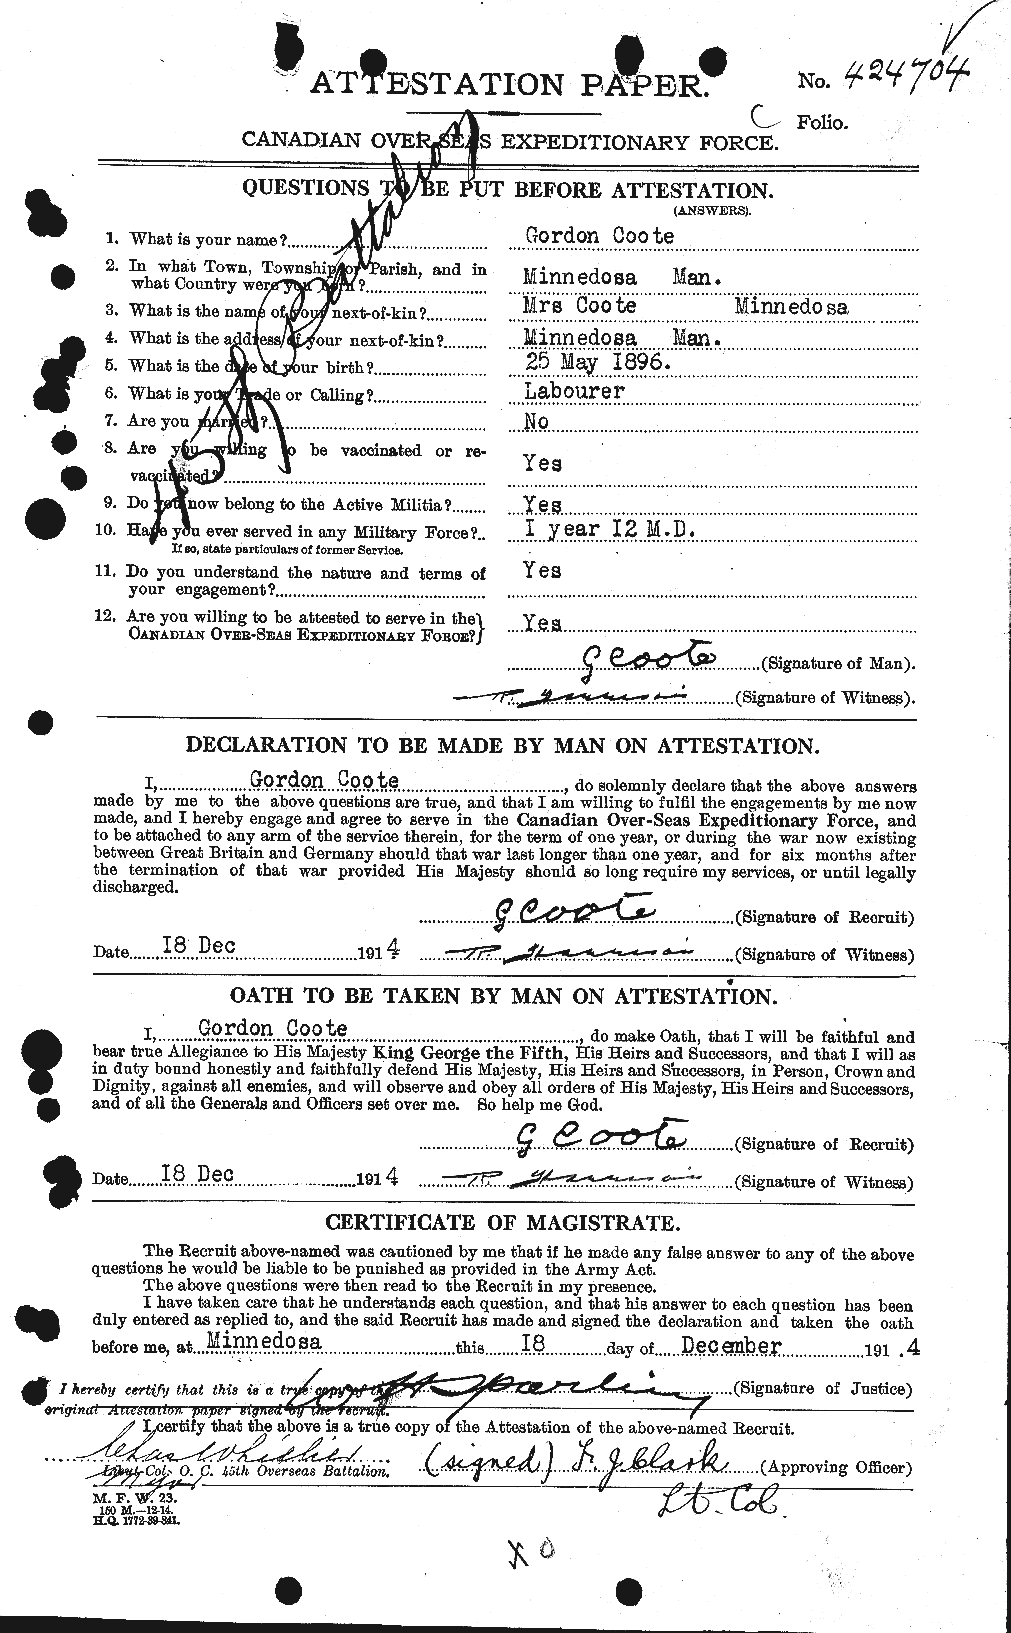 Dossiers du Personnel de la Première Guerre mondiale - CEC 057508a